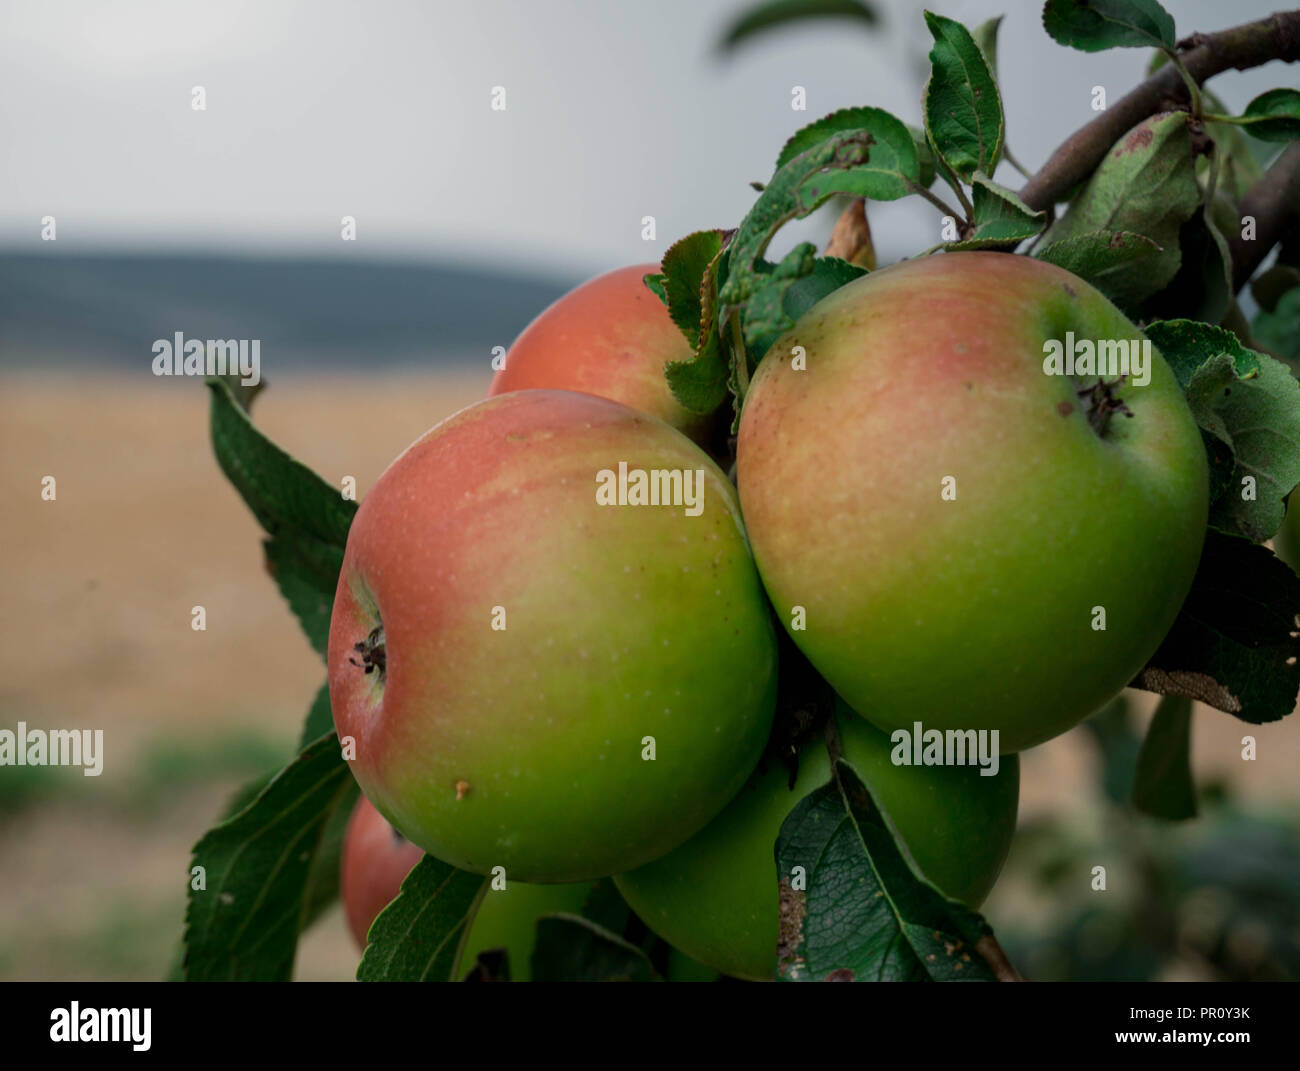 Bei einer Wanderung die wunderschönen Äpfel entdeckt Stock Photo